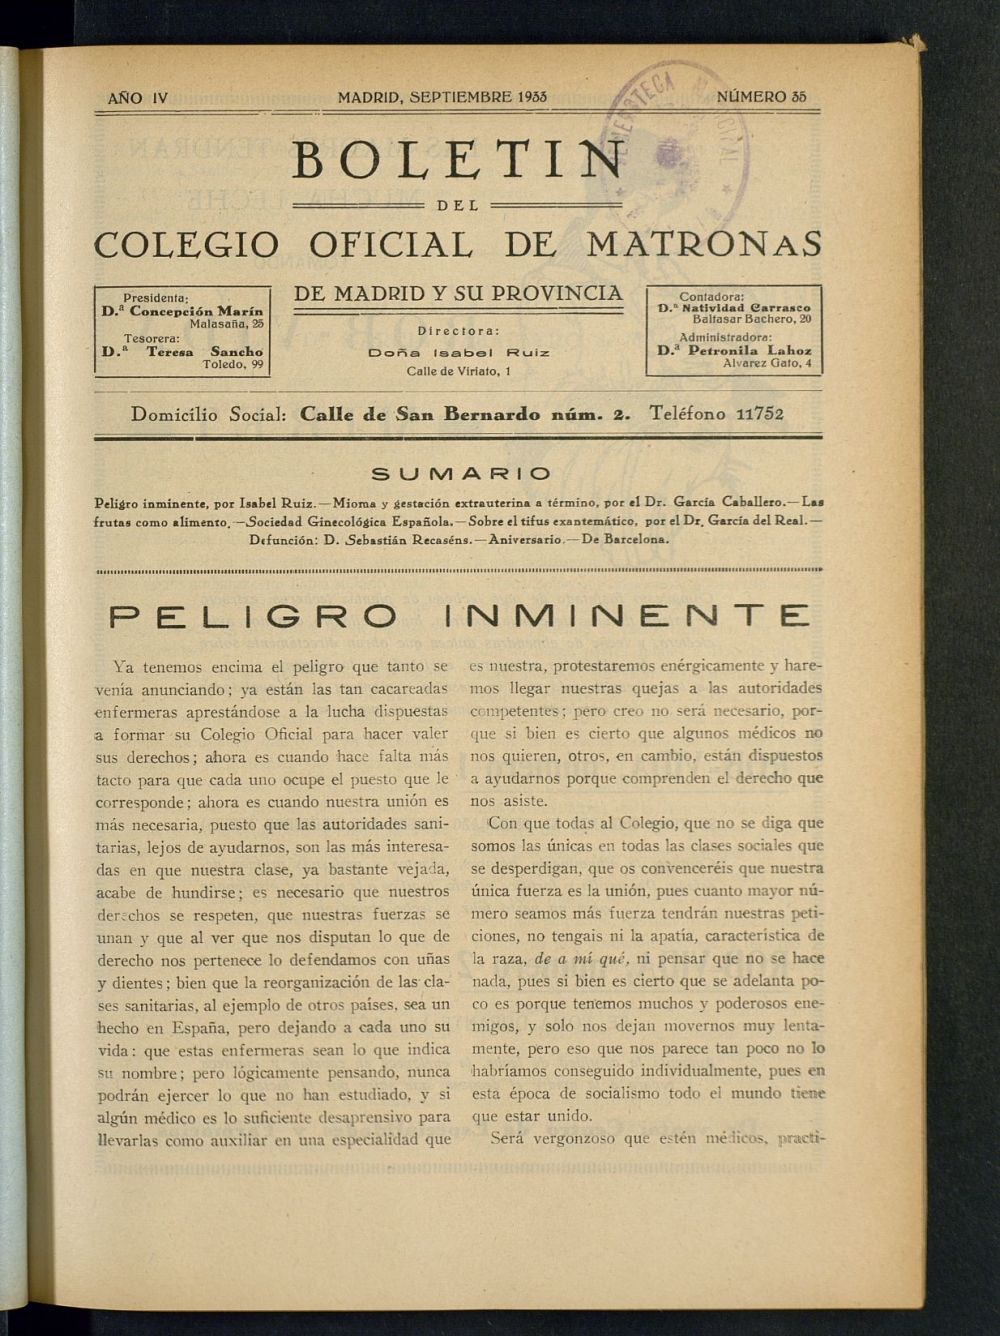 Boletn del Colegio Oficial de Matronas de Madrid y su Provincia de septiembre de 1933